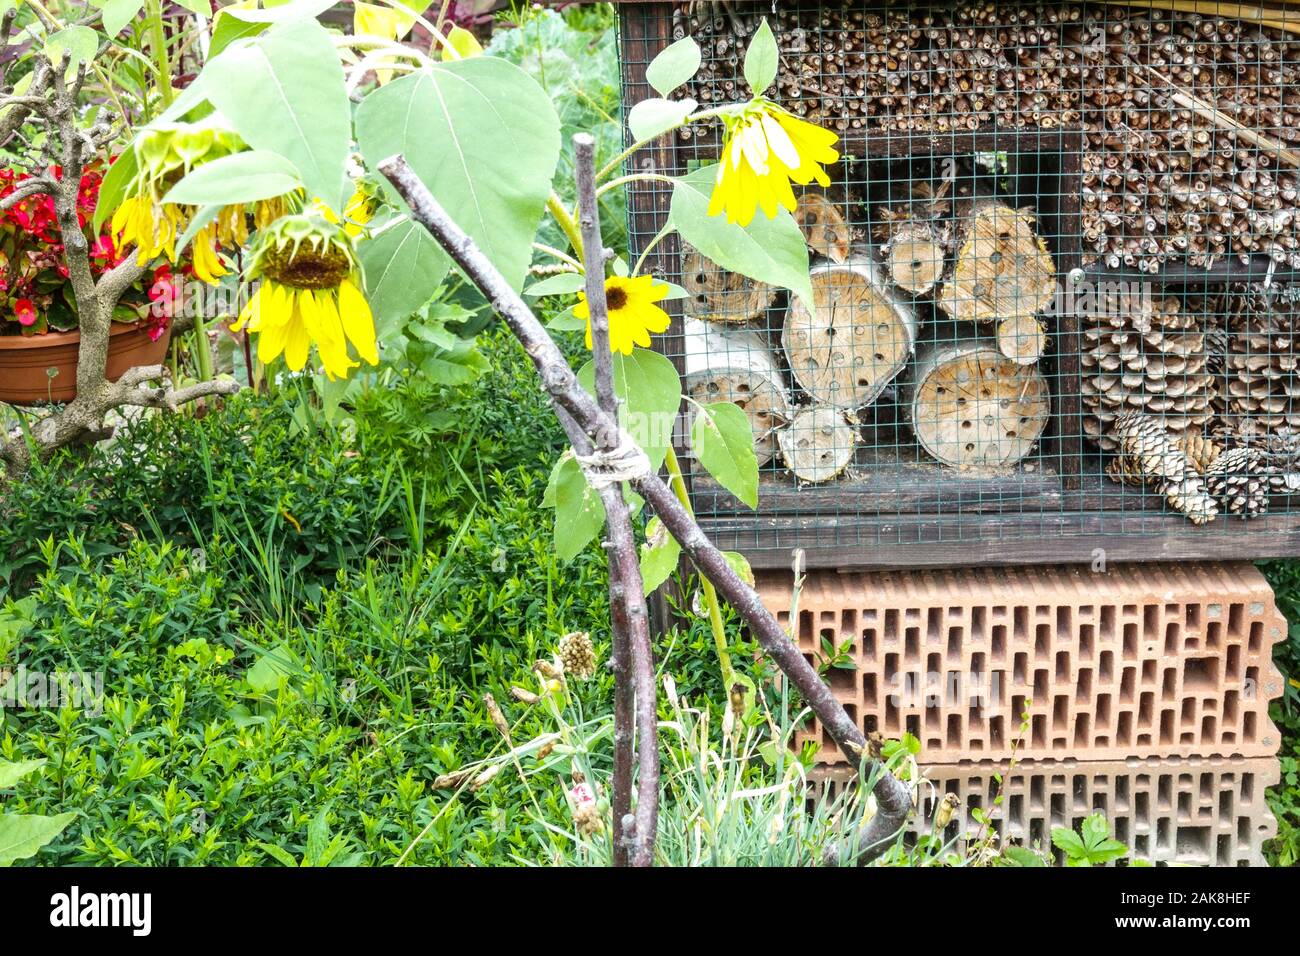 Insektenhotel mit Gartensonnenblumen, Schutz für verschiedene Insekten - nützliche Insekten Insekten Insektenblumen im Hotelgarten Stockfoto